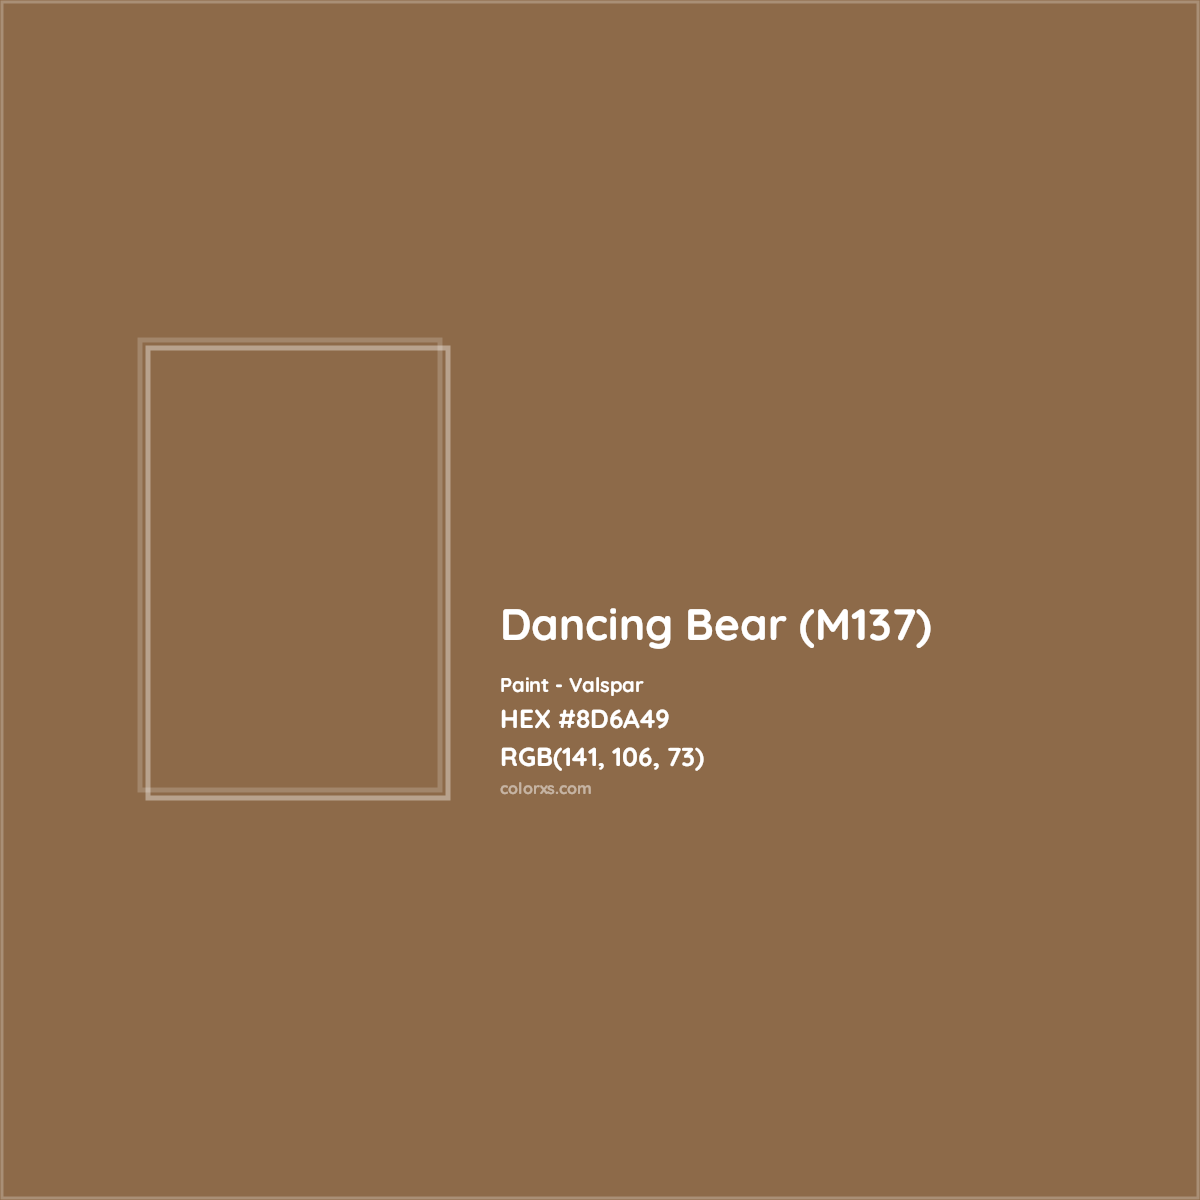 HEX #8D6A49 Dancing Bear (M137) Paint Valspar - Color Code